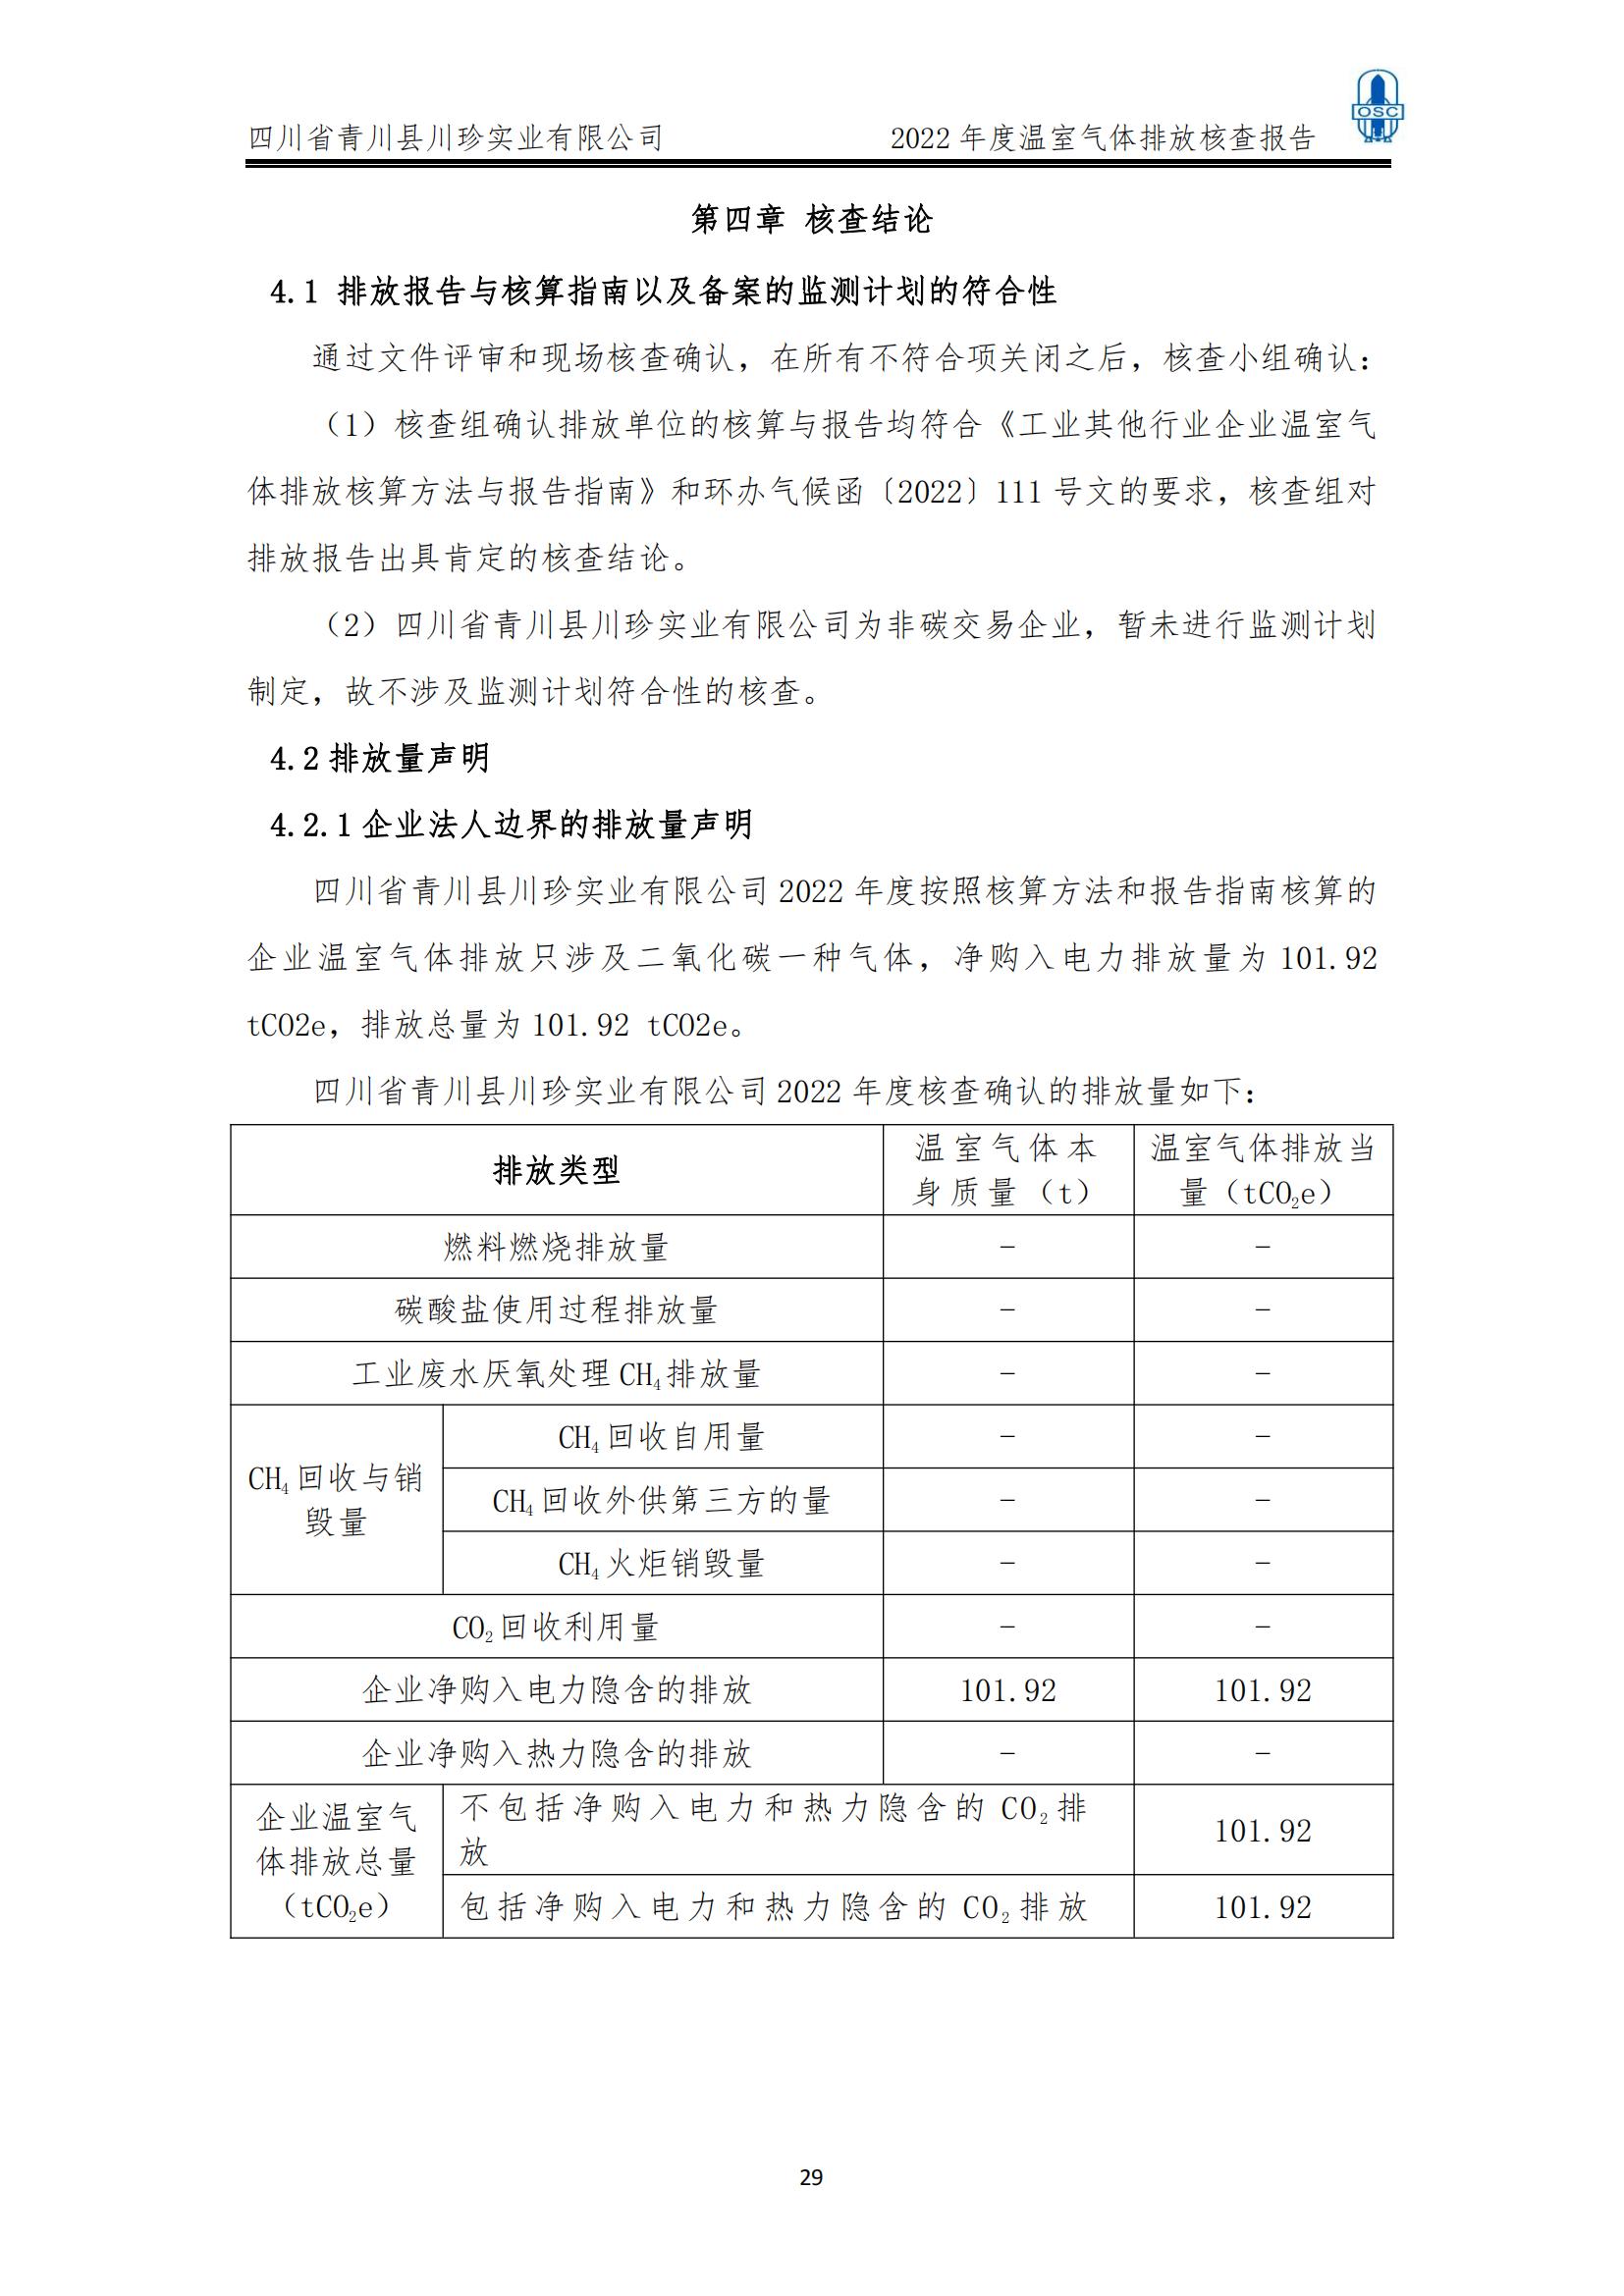 2022年度温室气体核查报告(四川省青川县川珍实业有限公司(图30)